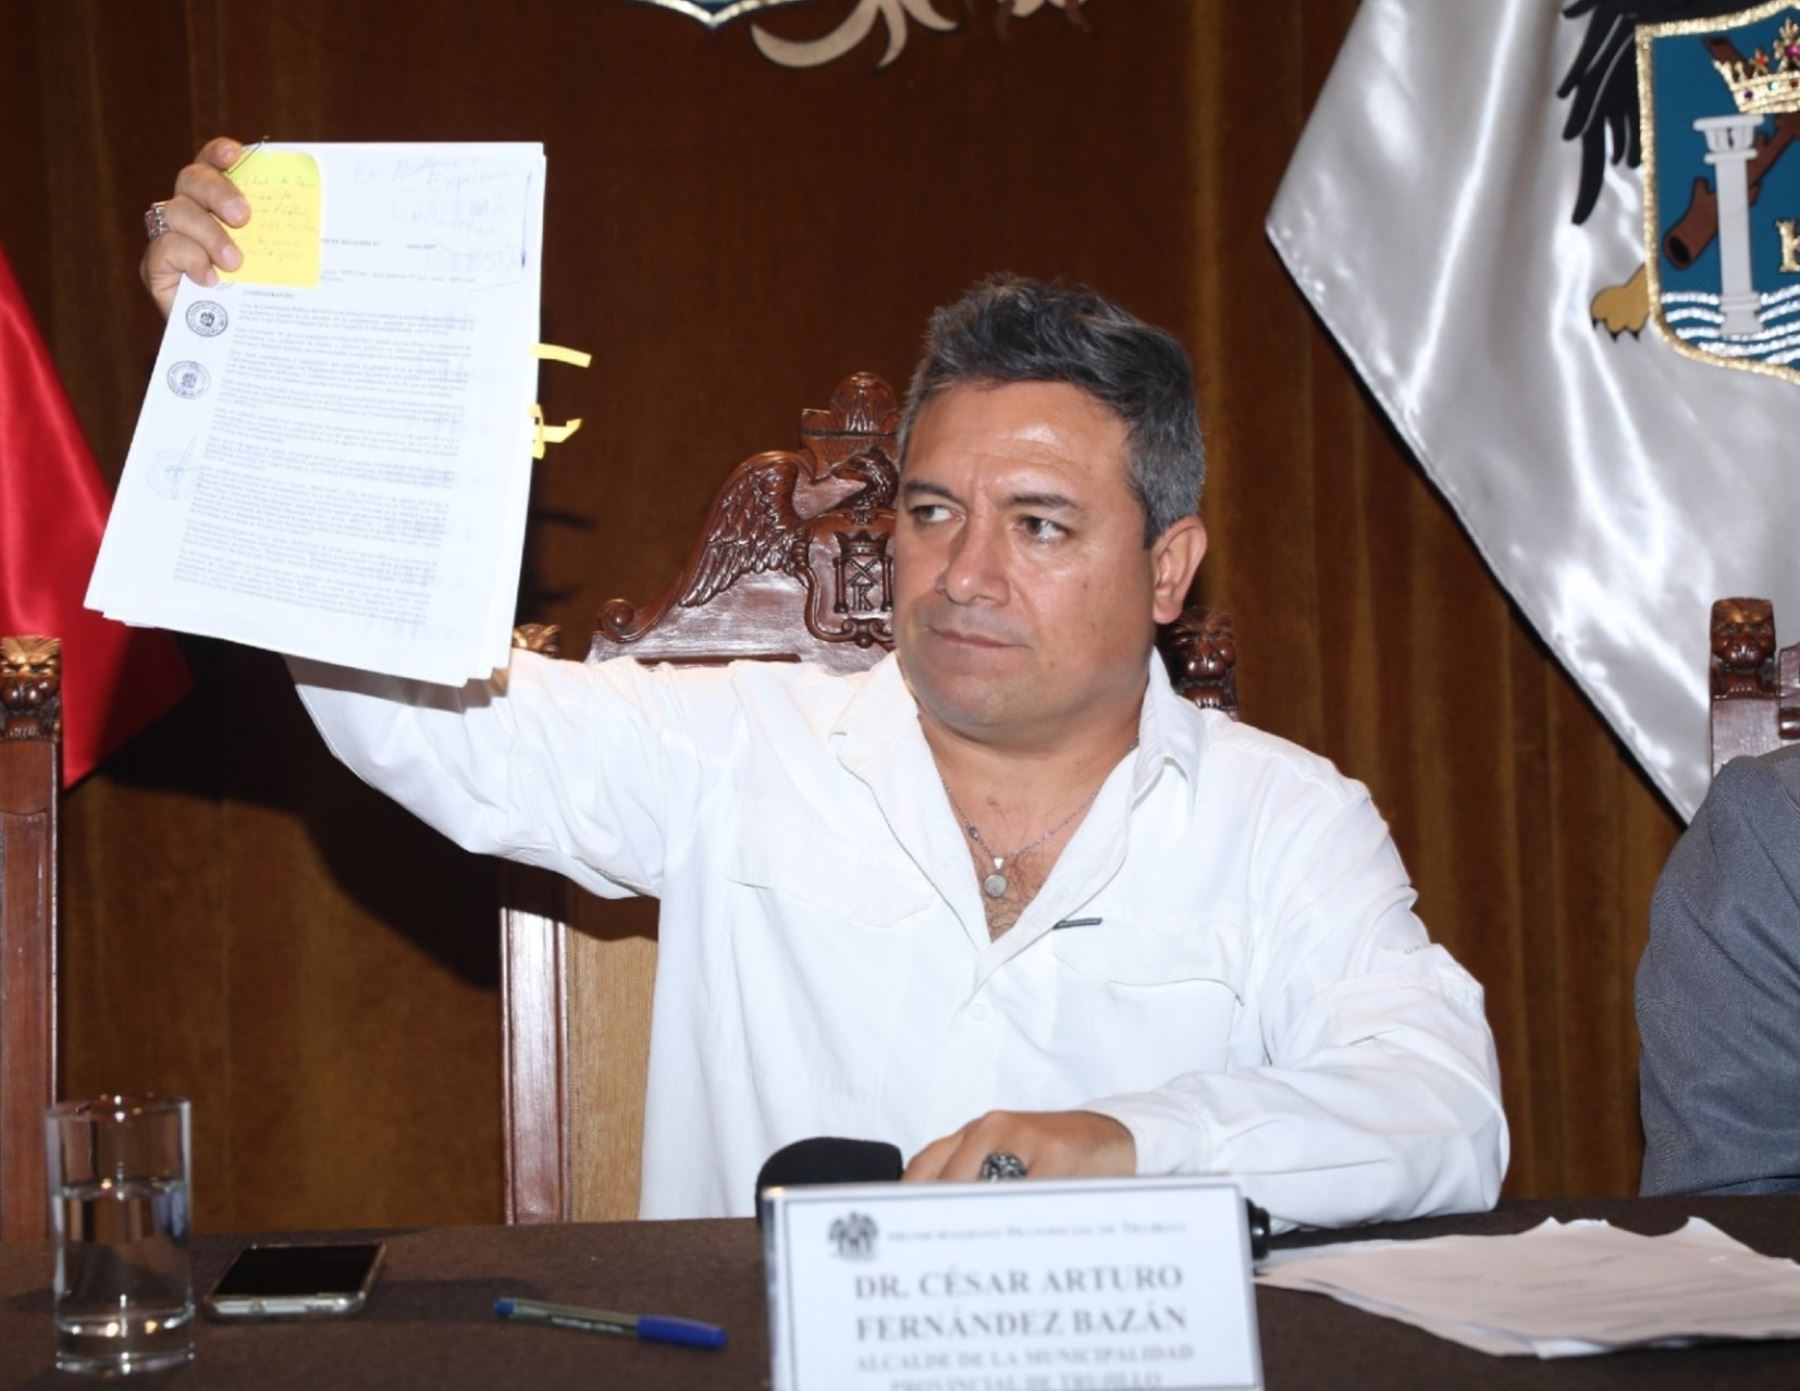 Alcalde de Trujillo, Arturo Fernández, enfrenta un proceso de suspensión en el cargo. ANDINA/Difusión